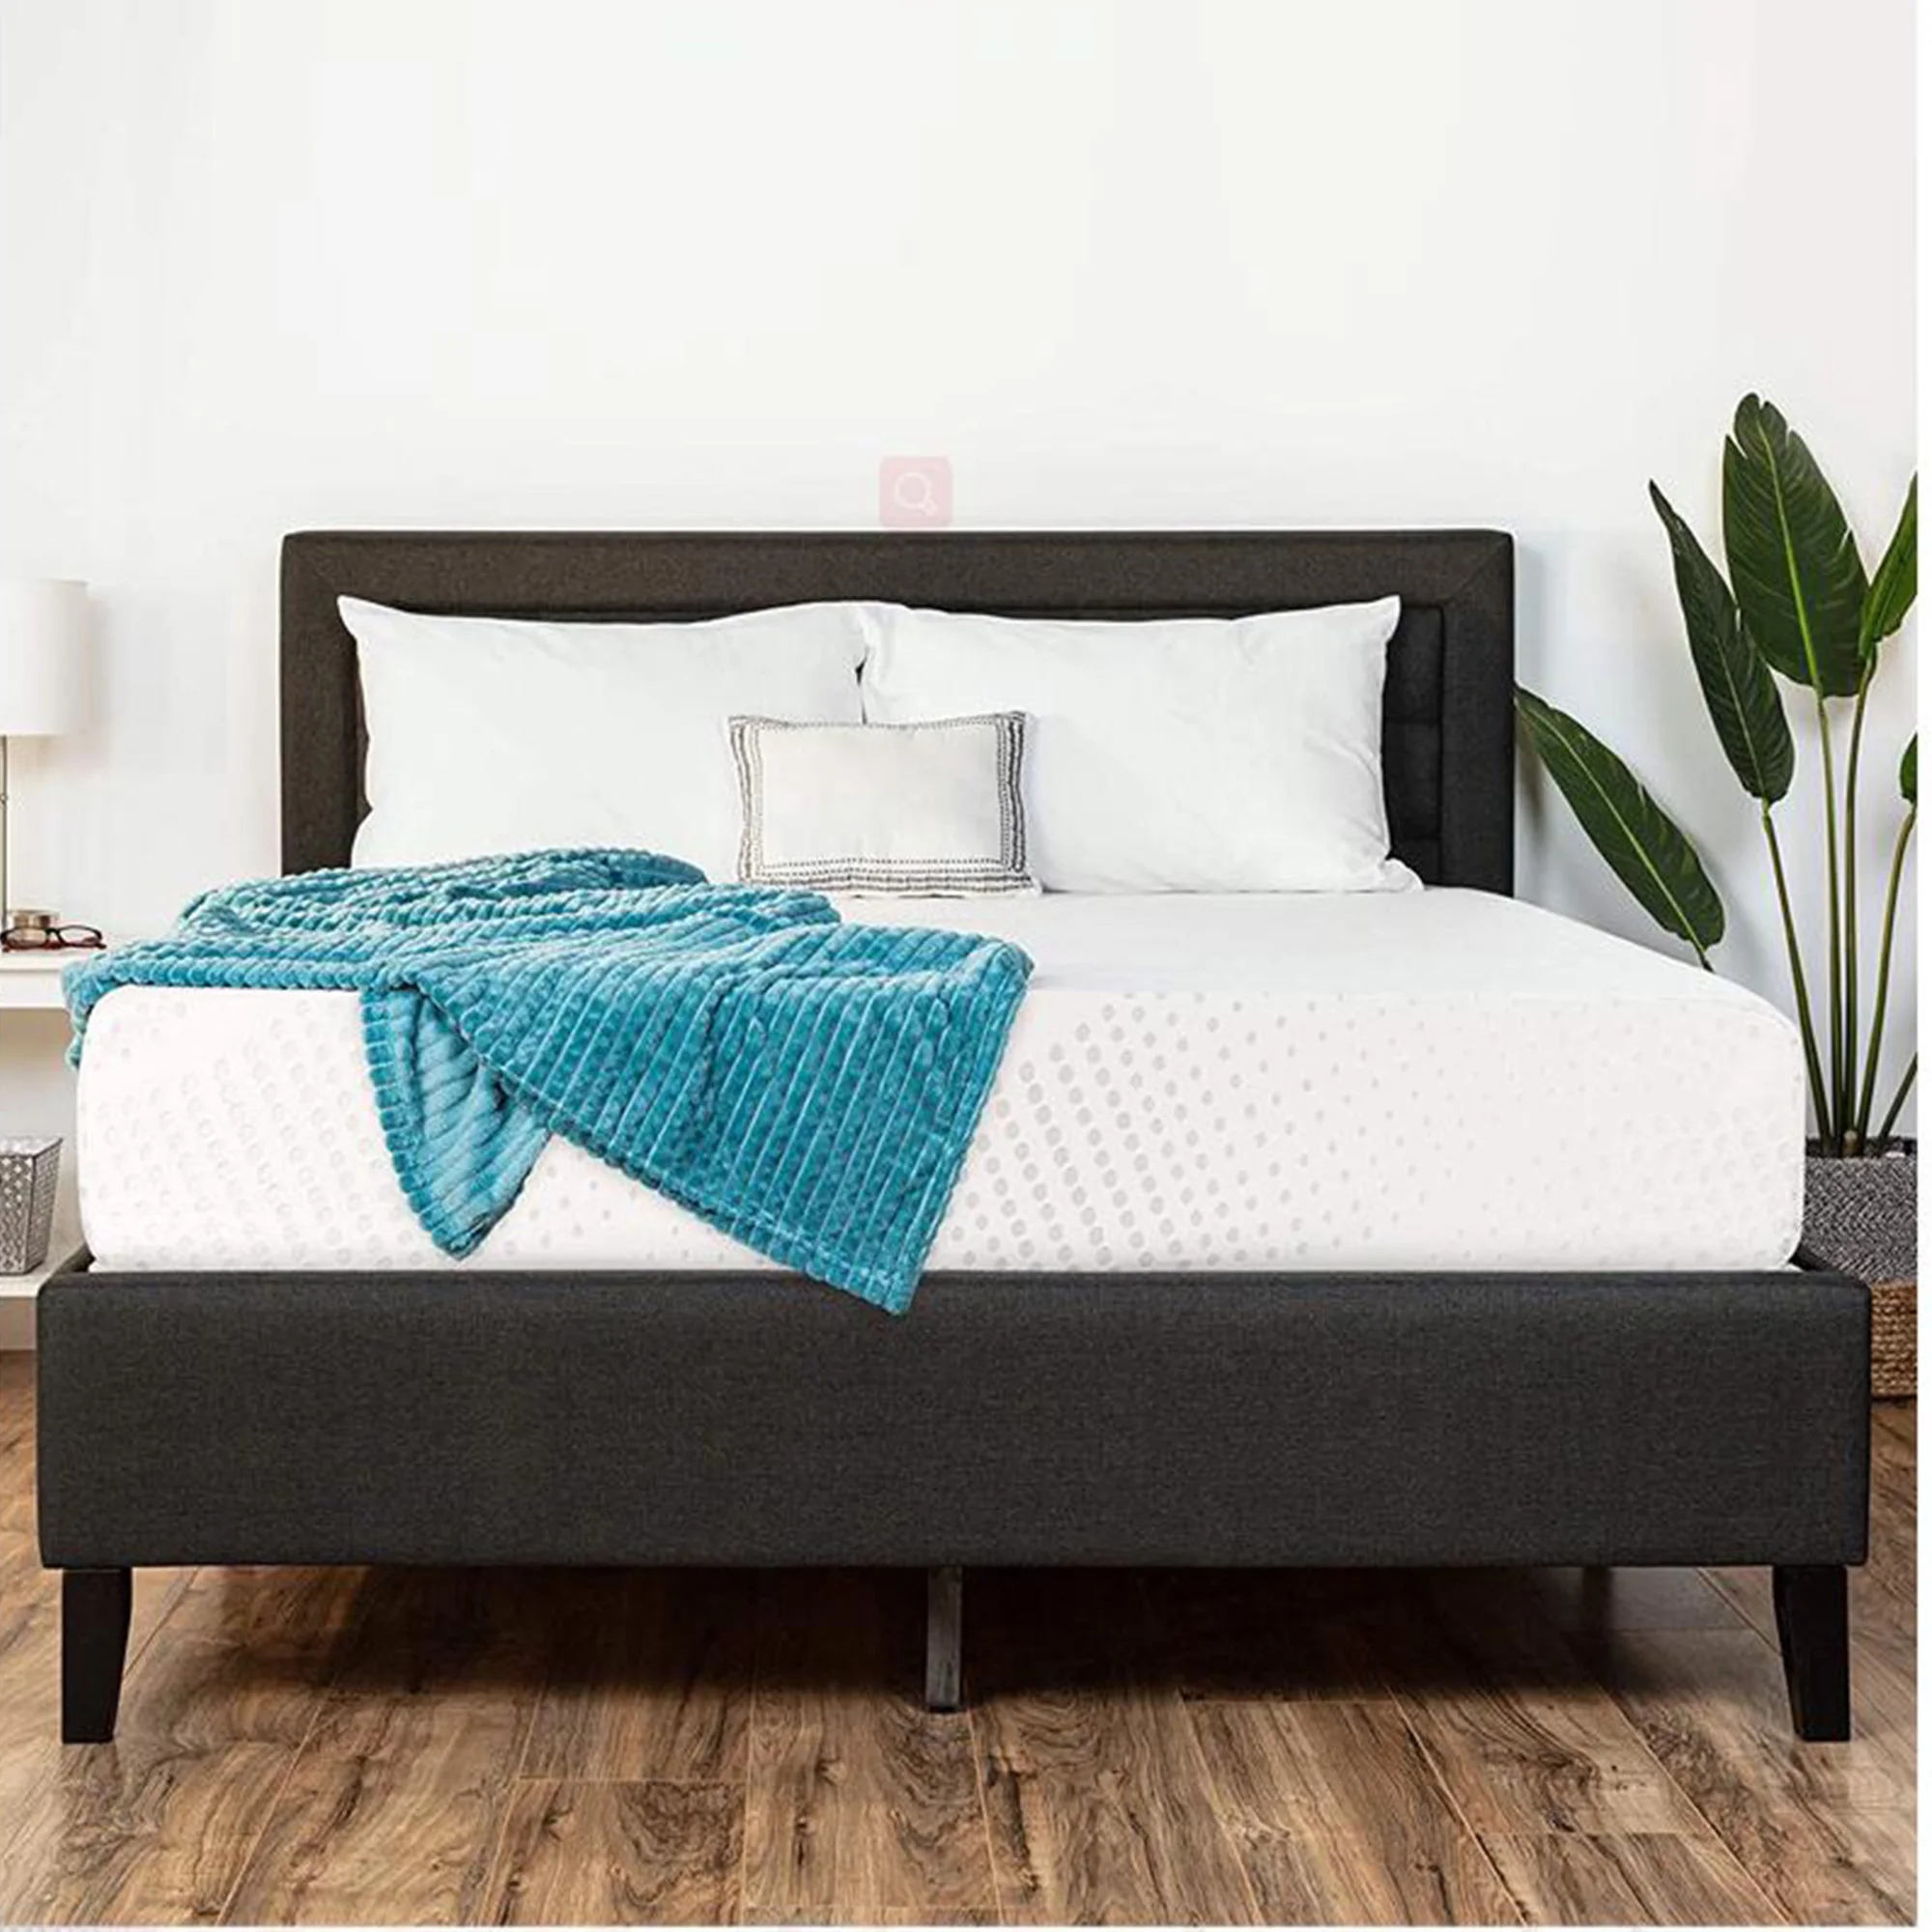 professional OEM ODM cheap bunk beds corner protector spring pocket coil sponge mattress